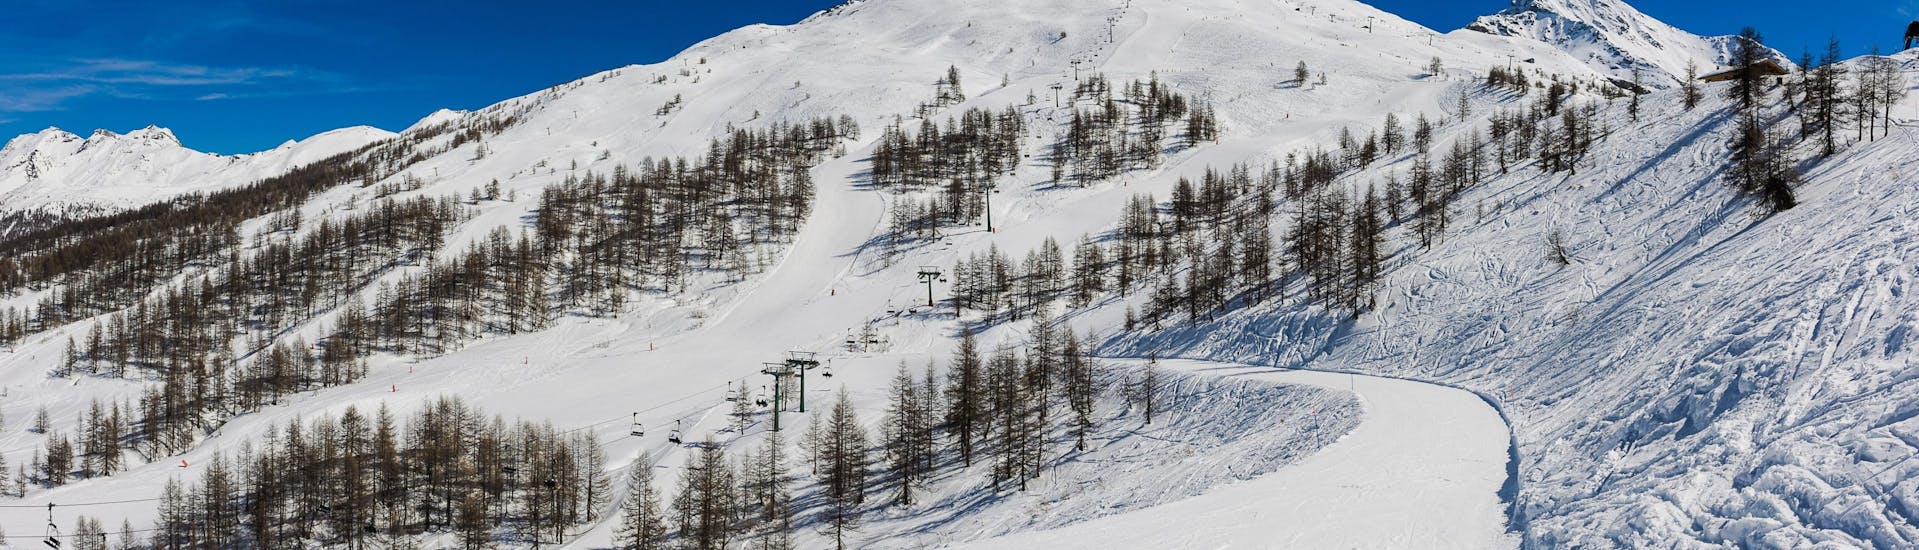 Ein Blick auf die Skipisten von Vialattea im Piemont, wo örtliche Skischulen ihre Skikurse durchfüren.